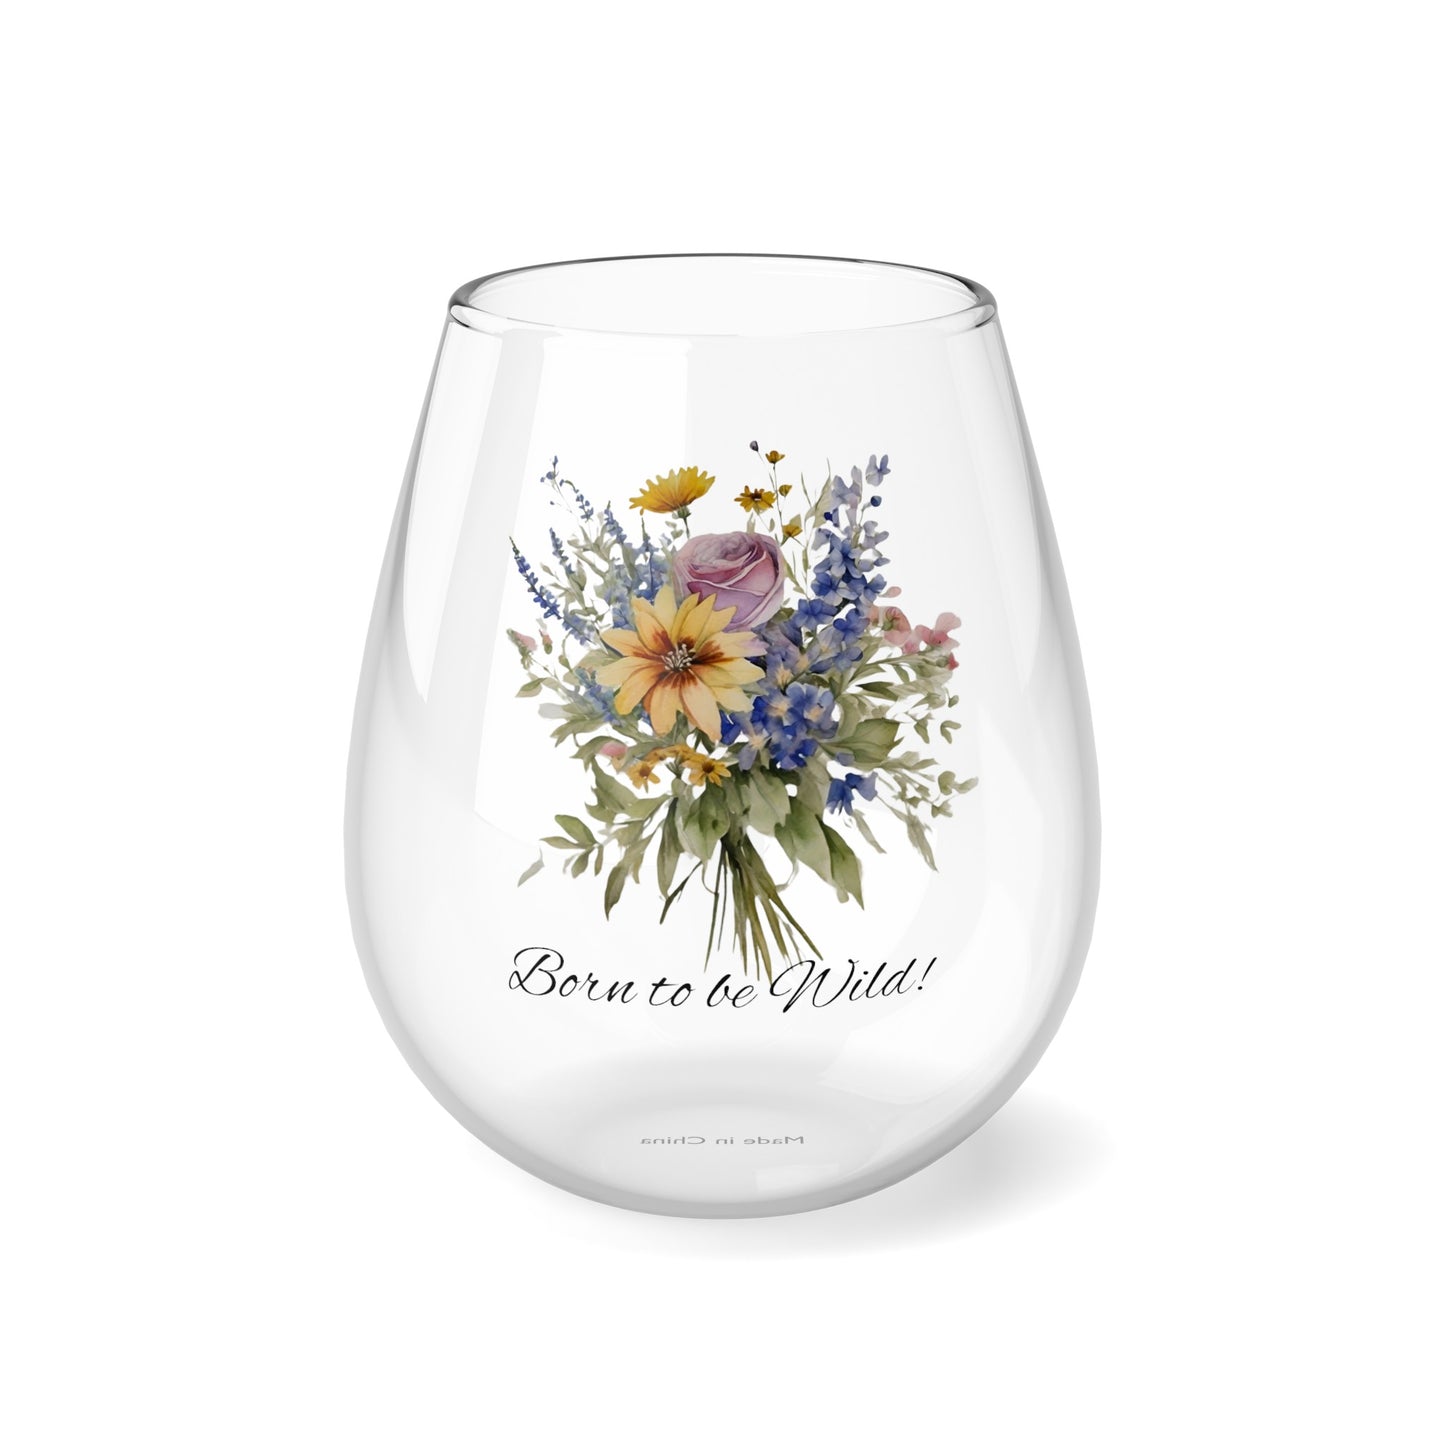 Born to be Wild wine glass, Wildflowers Stemless Wine Glass, 11.75oz - The Witchy Gypsy